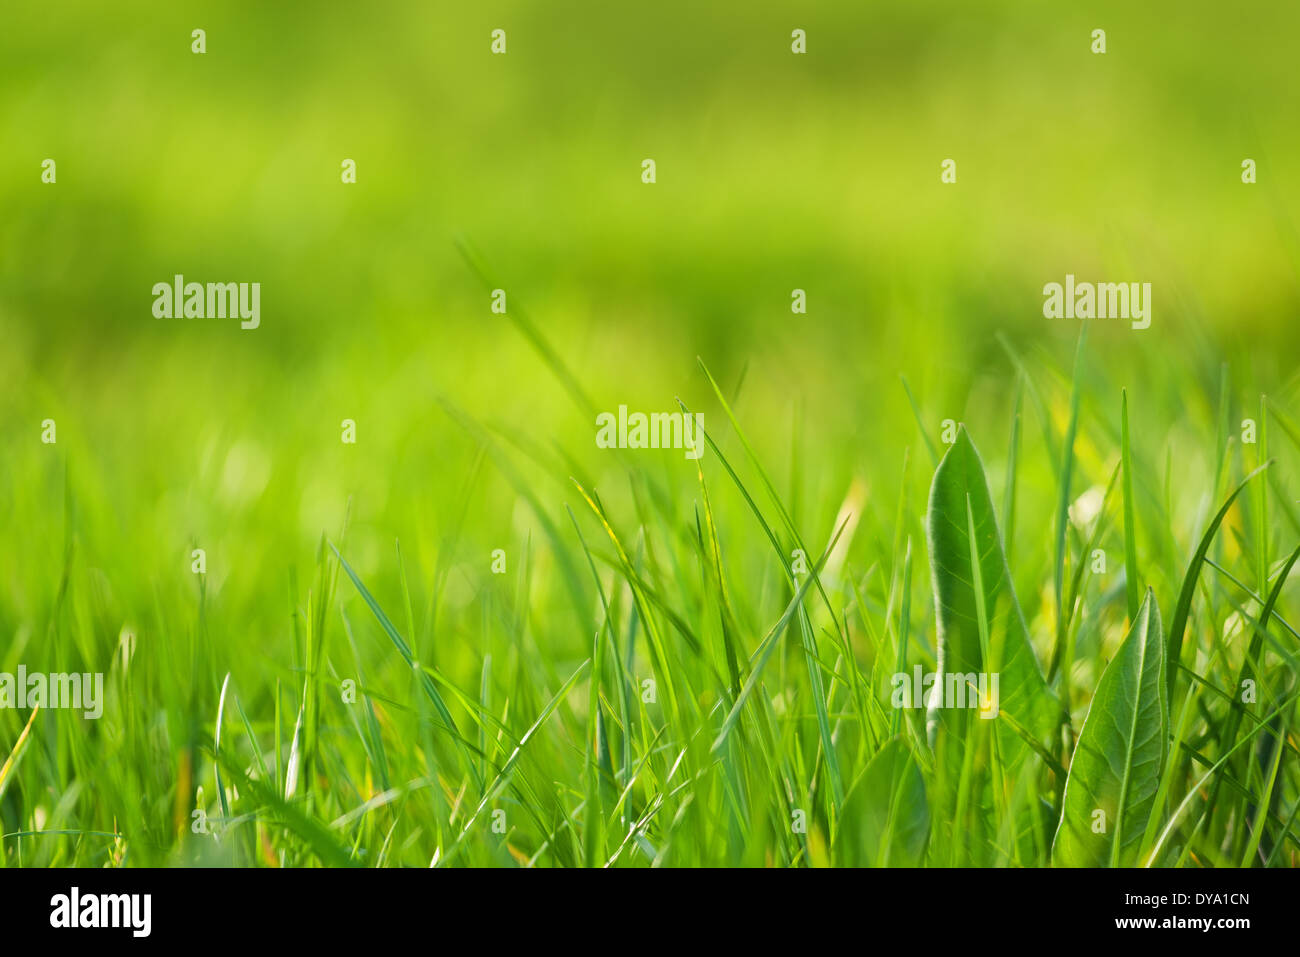 Frische grüne Grass als Frühling Saison Hintergrund, Bild mit geringen Schärfentiefe, weich und selektiven Fokus. Stockfoto